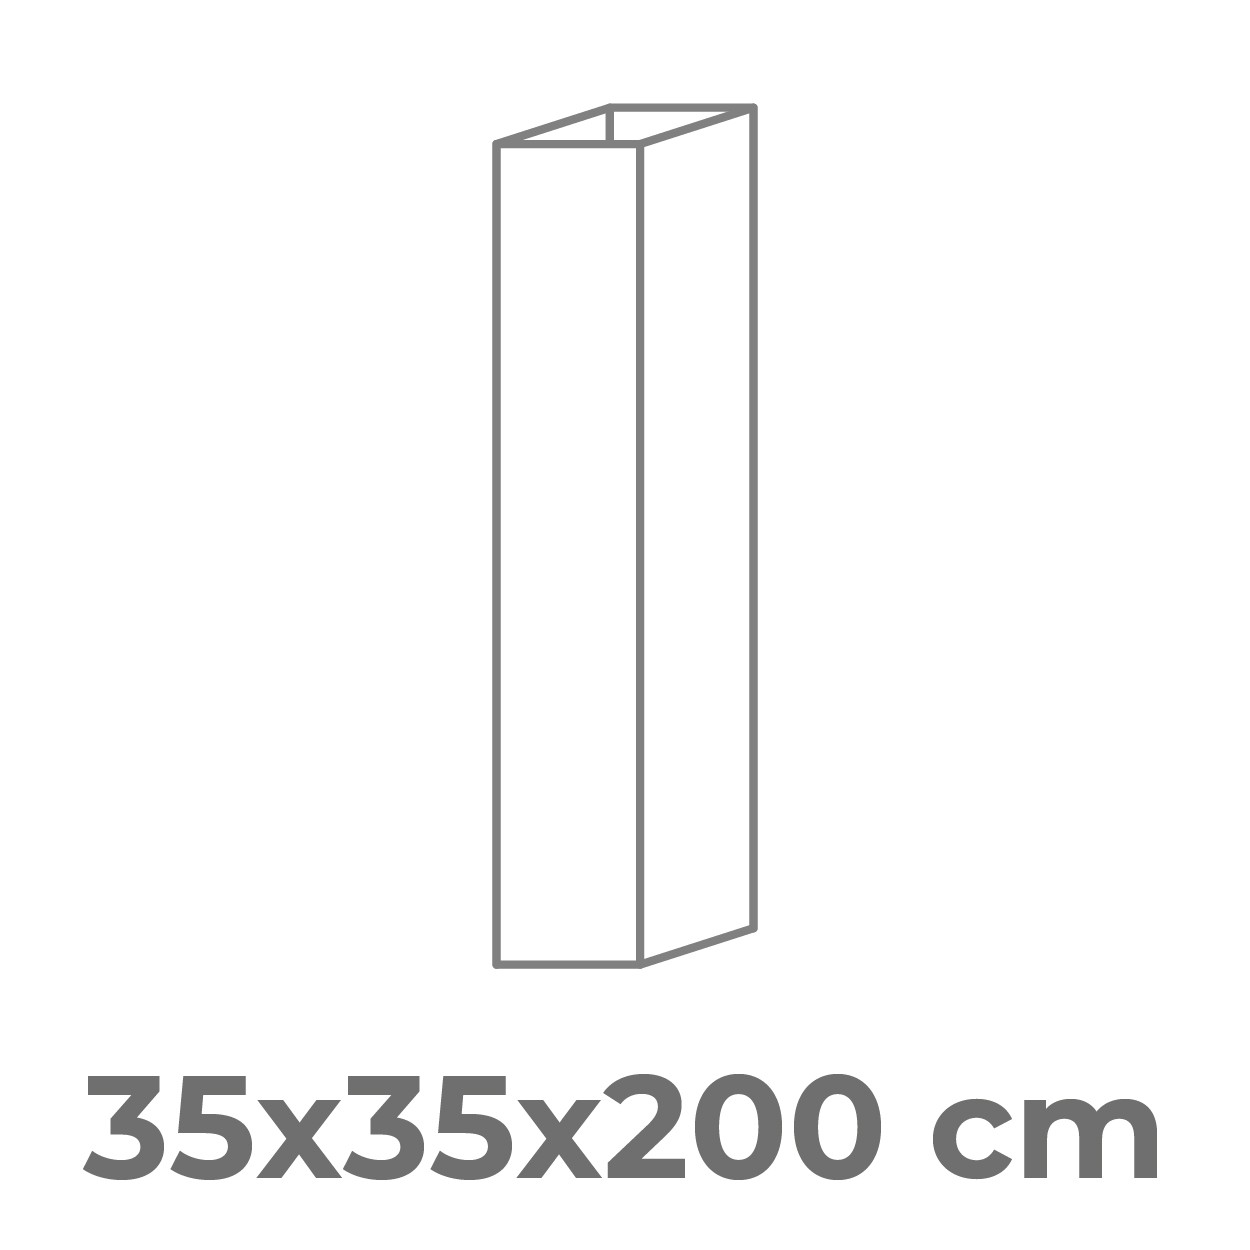 Cuatro lados pequeño - 35x35x200 cm